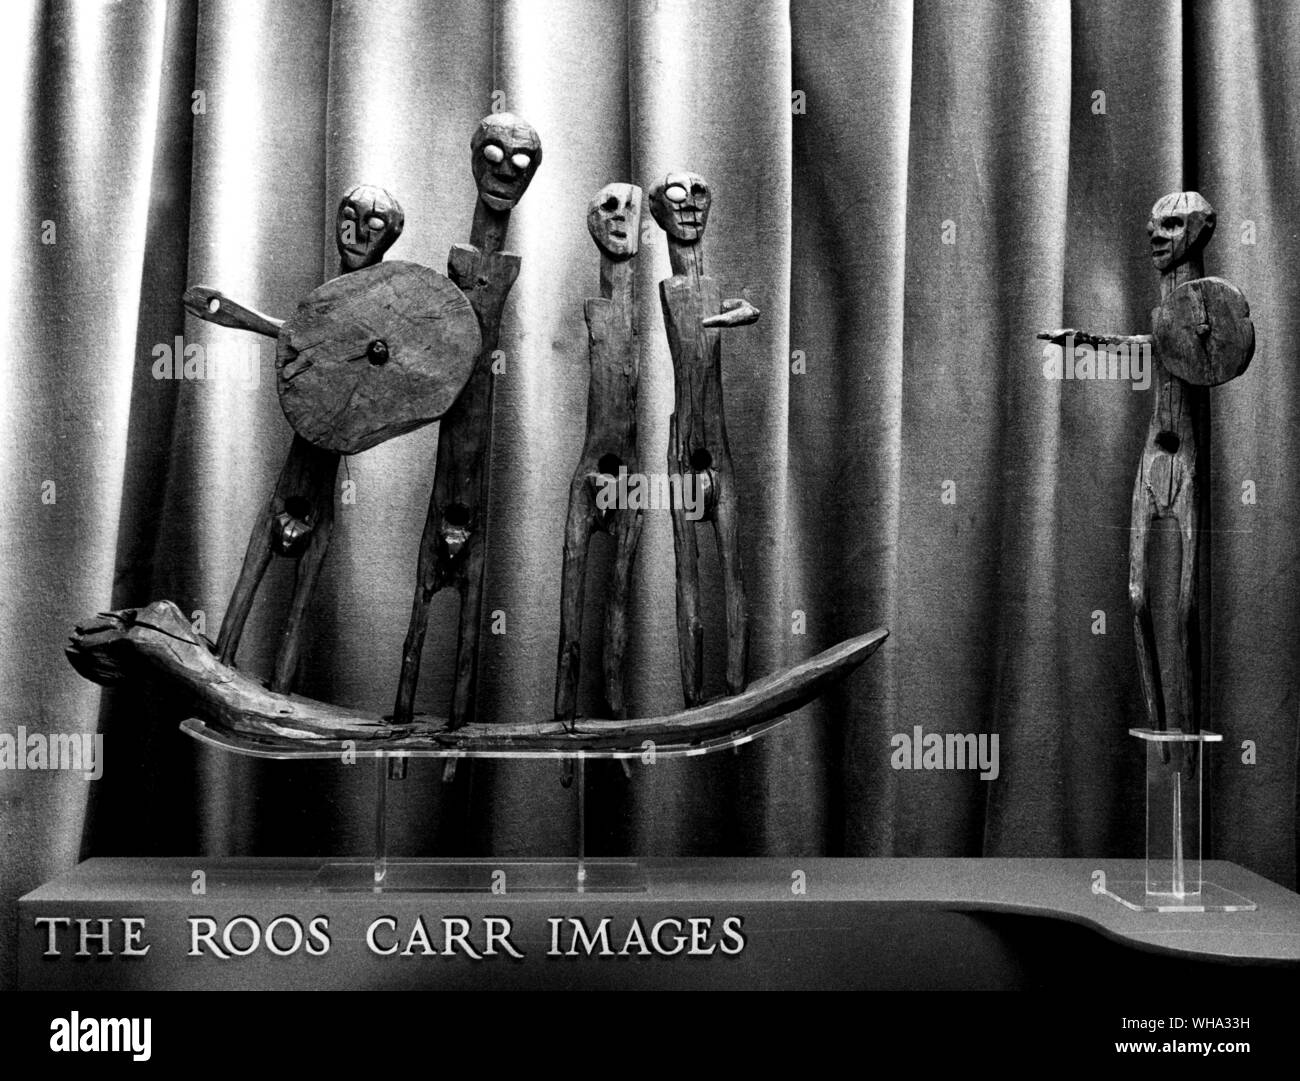 Presto l'uomo: Il Roos Carr immagini (tarda età del bronzo). 1900 B.C - c. 500 A.C. Foto Stock